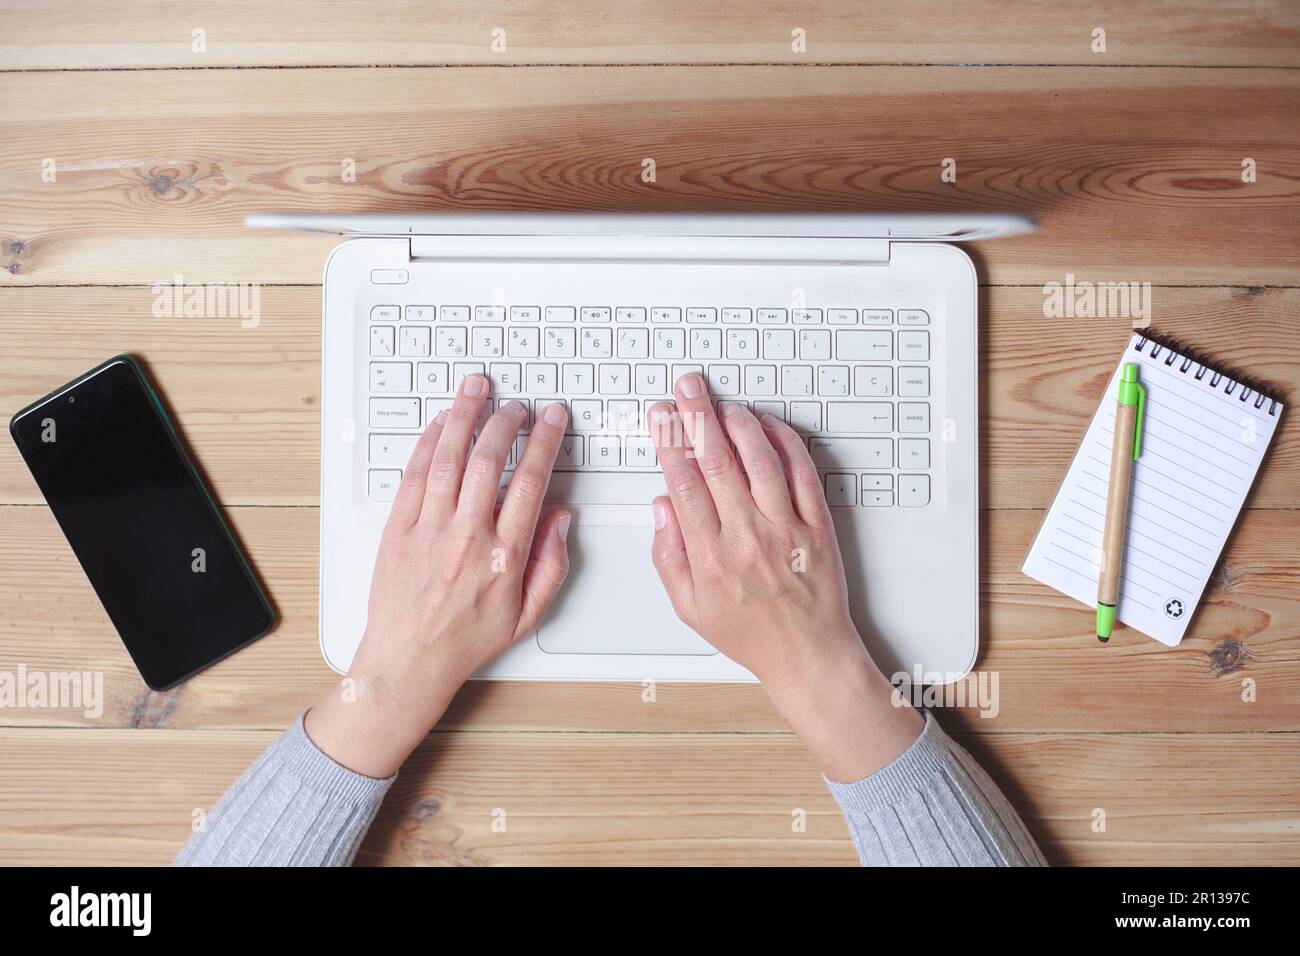 Draufsicht der Hände einer Frau, die auf einem Laptop tippen. Daneben befinden sich ihr Smartphone und ein Notizblock. Stockfoto